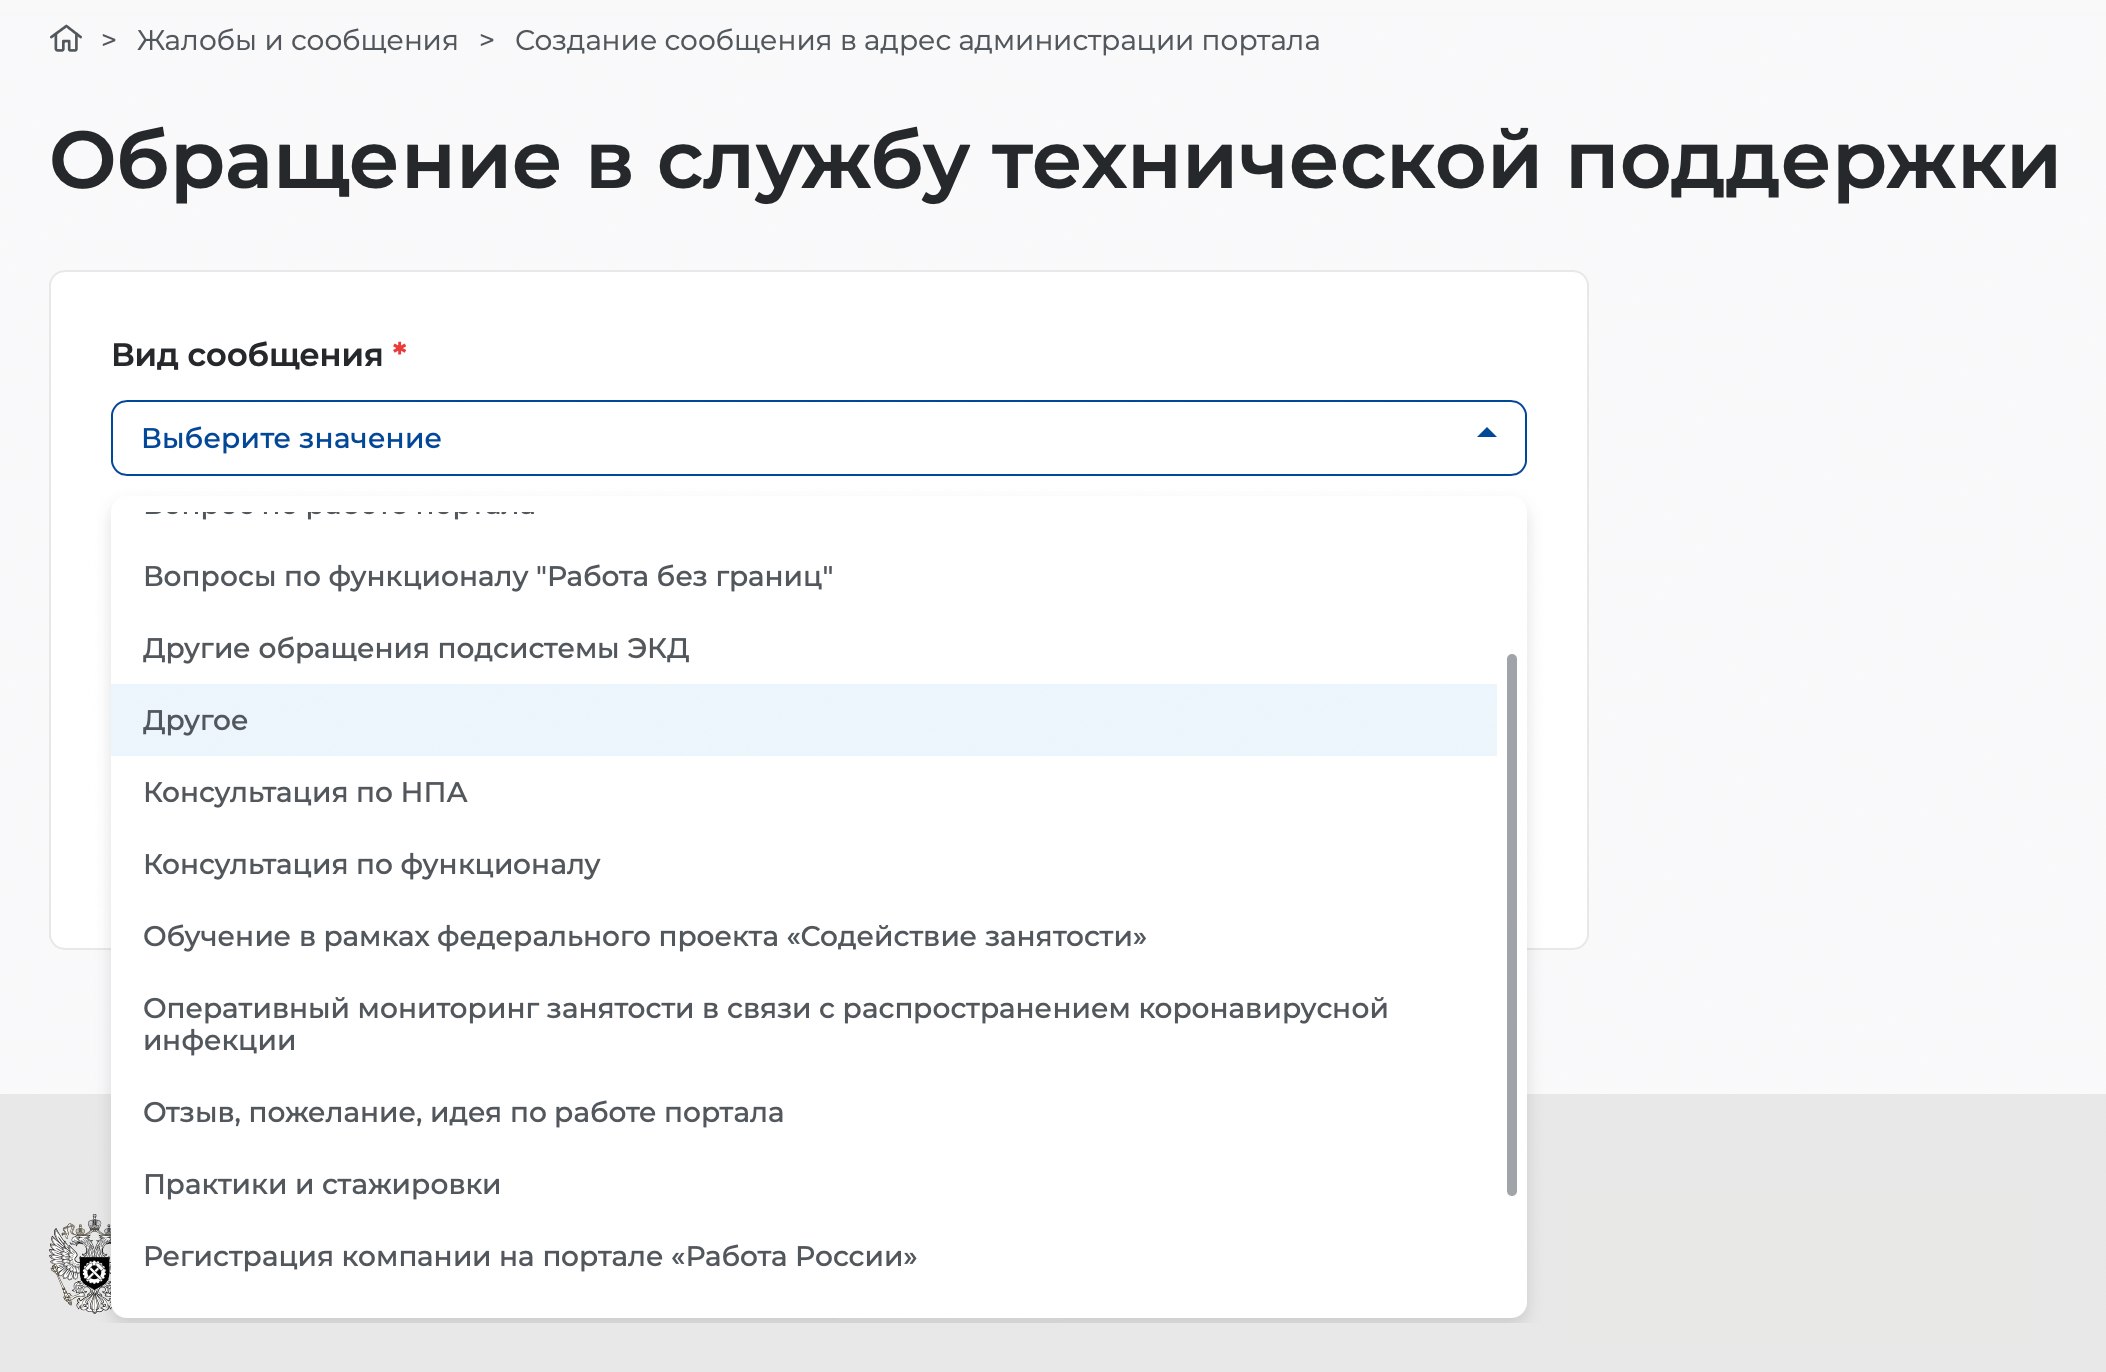 Инструкция, как удалить аккаунт на «Работа России». Источник: trudvem.ru